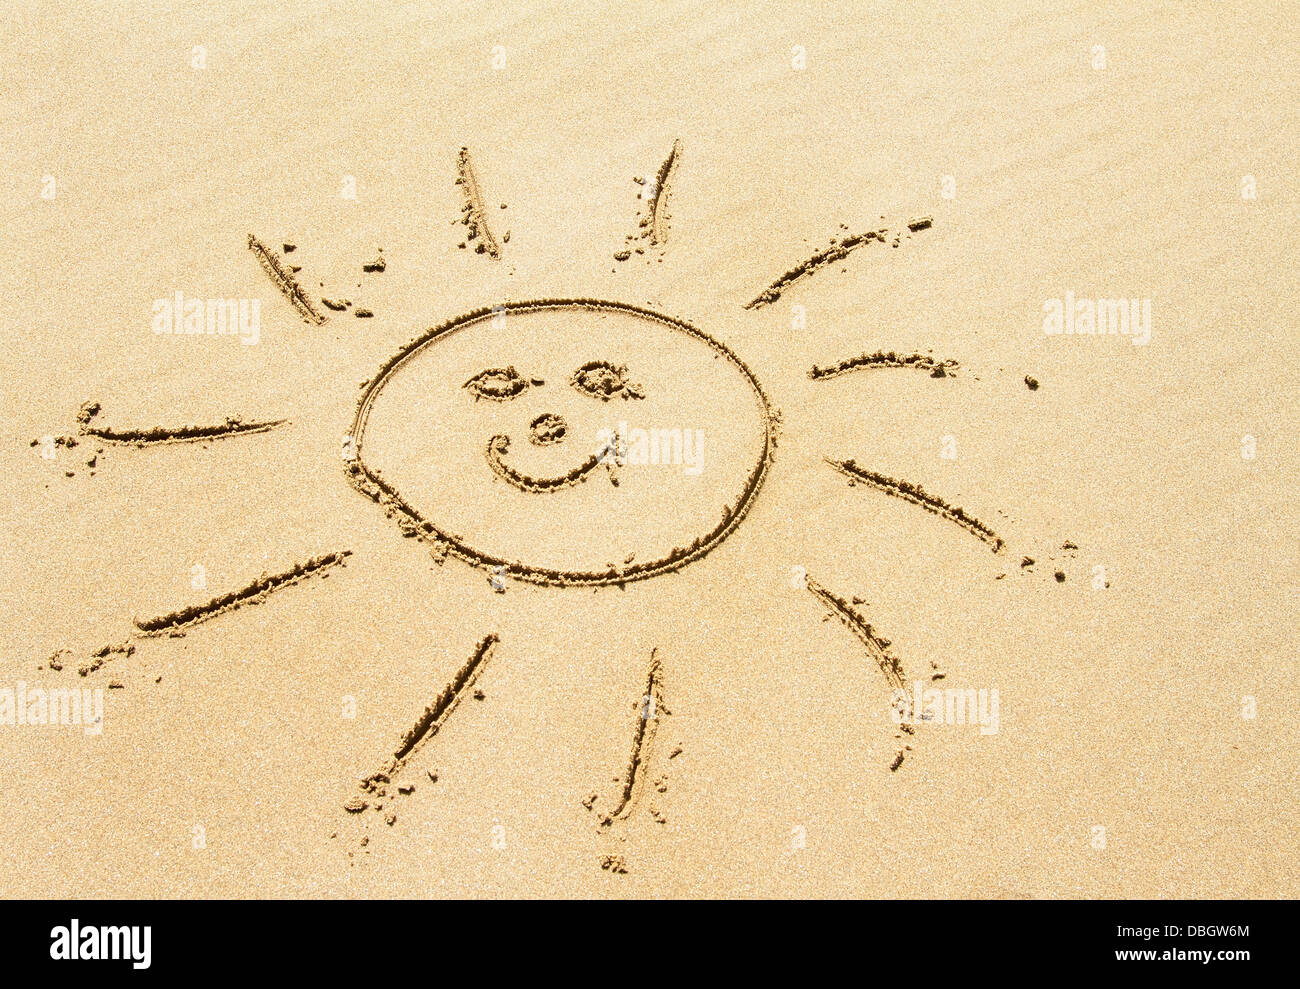 Sonnenzeichnung am goldenen Sandstrand Stockfoto